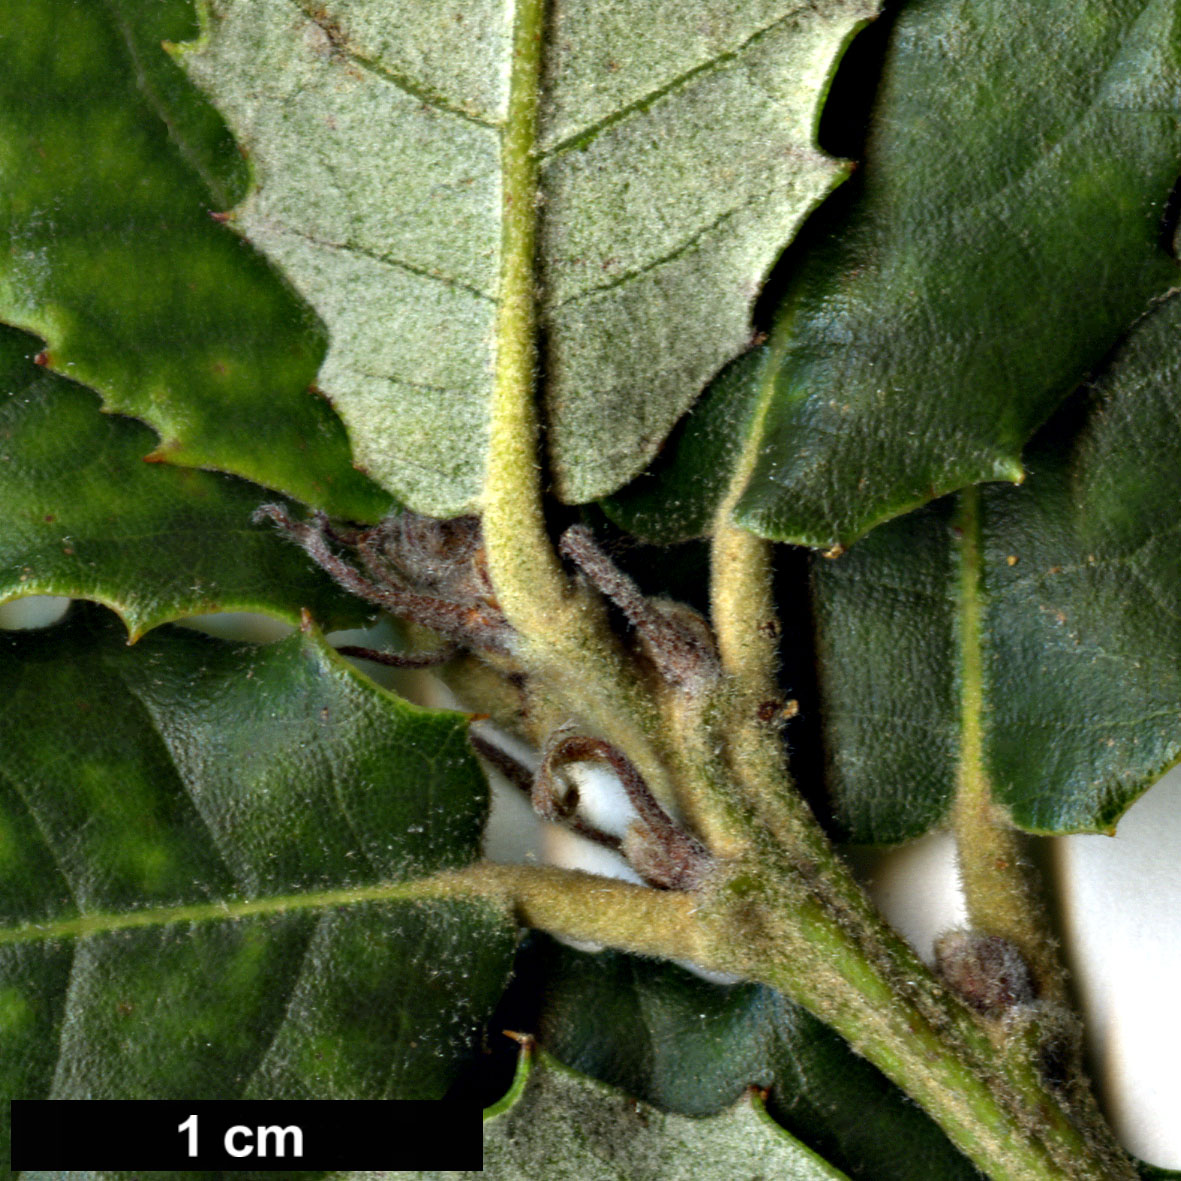 High resolution image: Family: Fagaceae - Genus: Quercus - Taxon: ×morisii (Q.ilex × Q.suber)